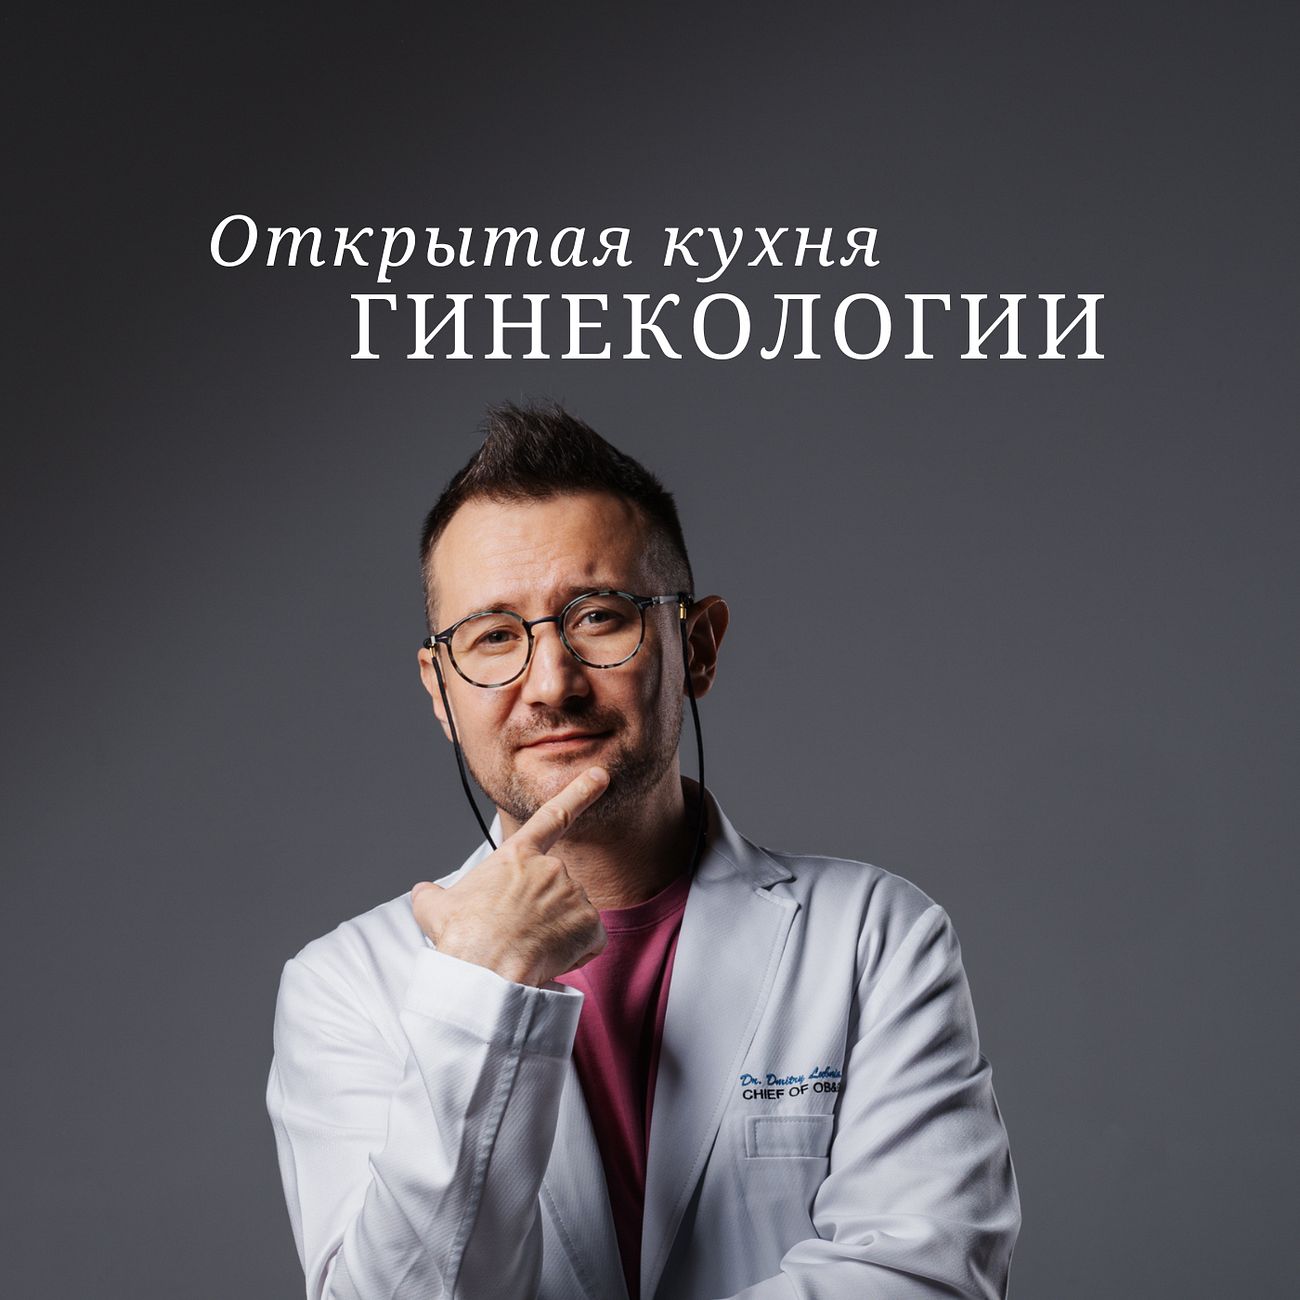 "Открытая кухня гинекологии" с Дмитрием Лубниным